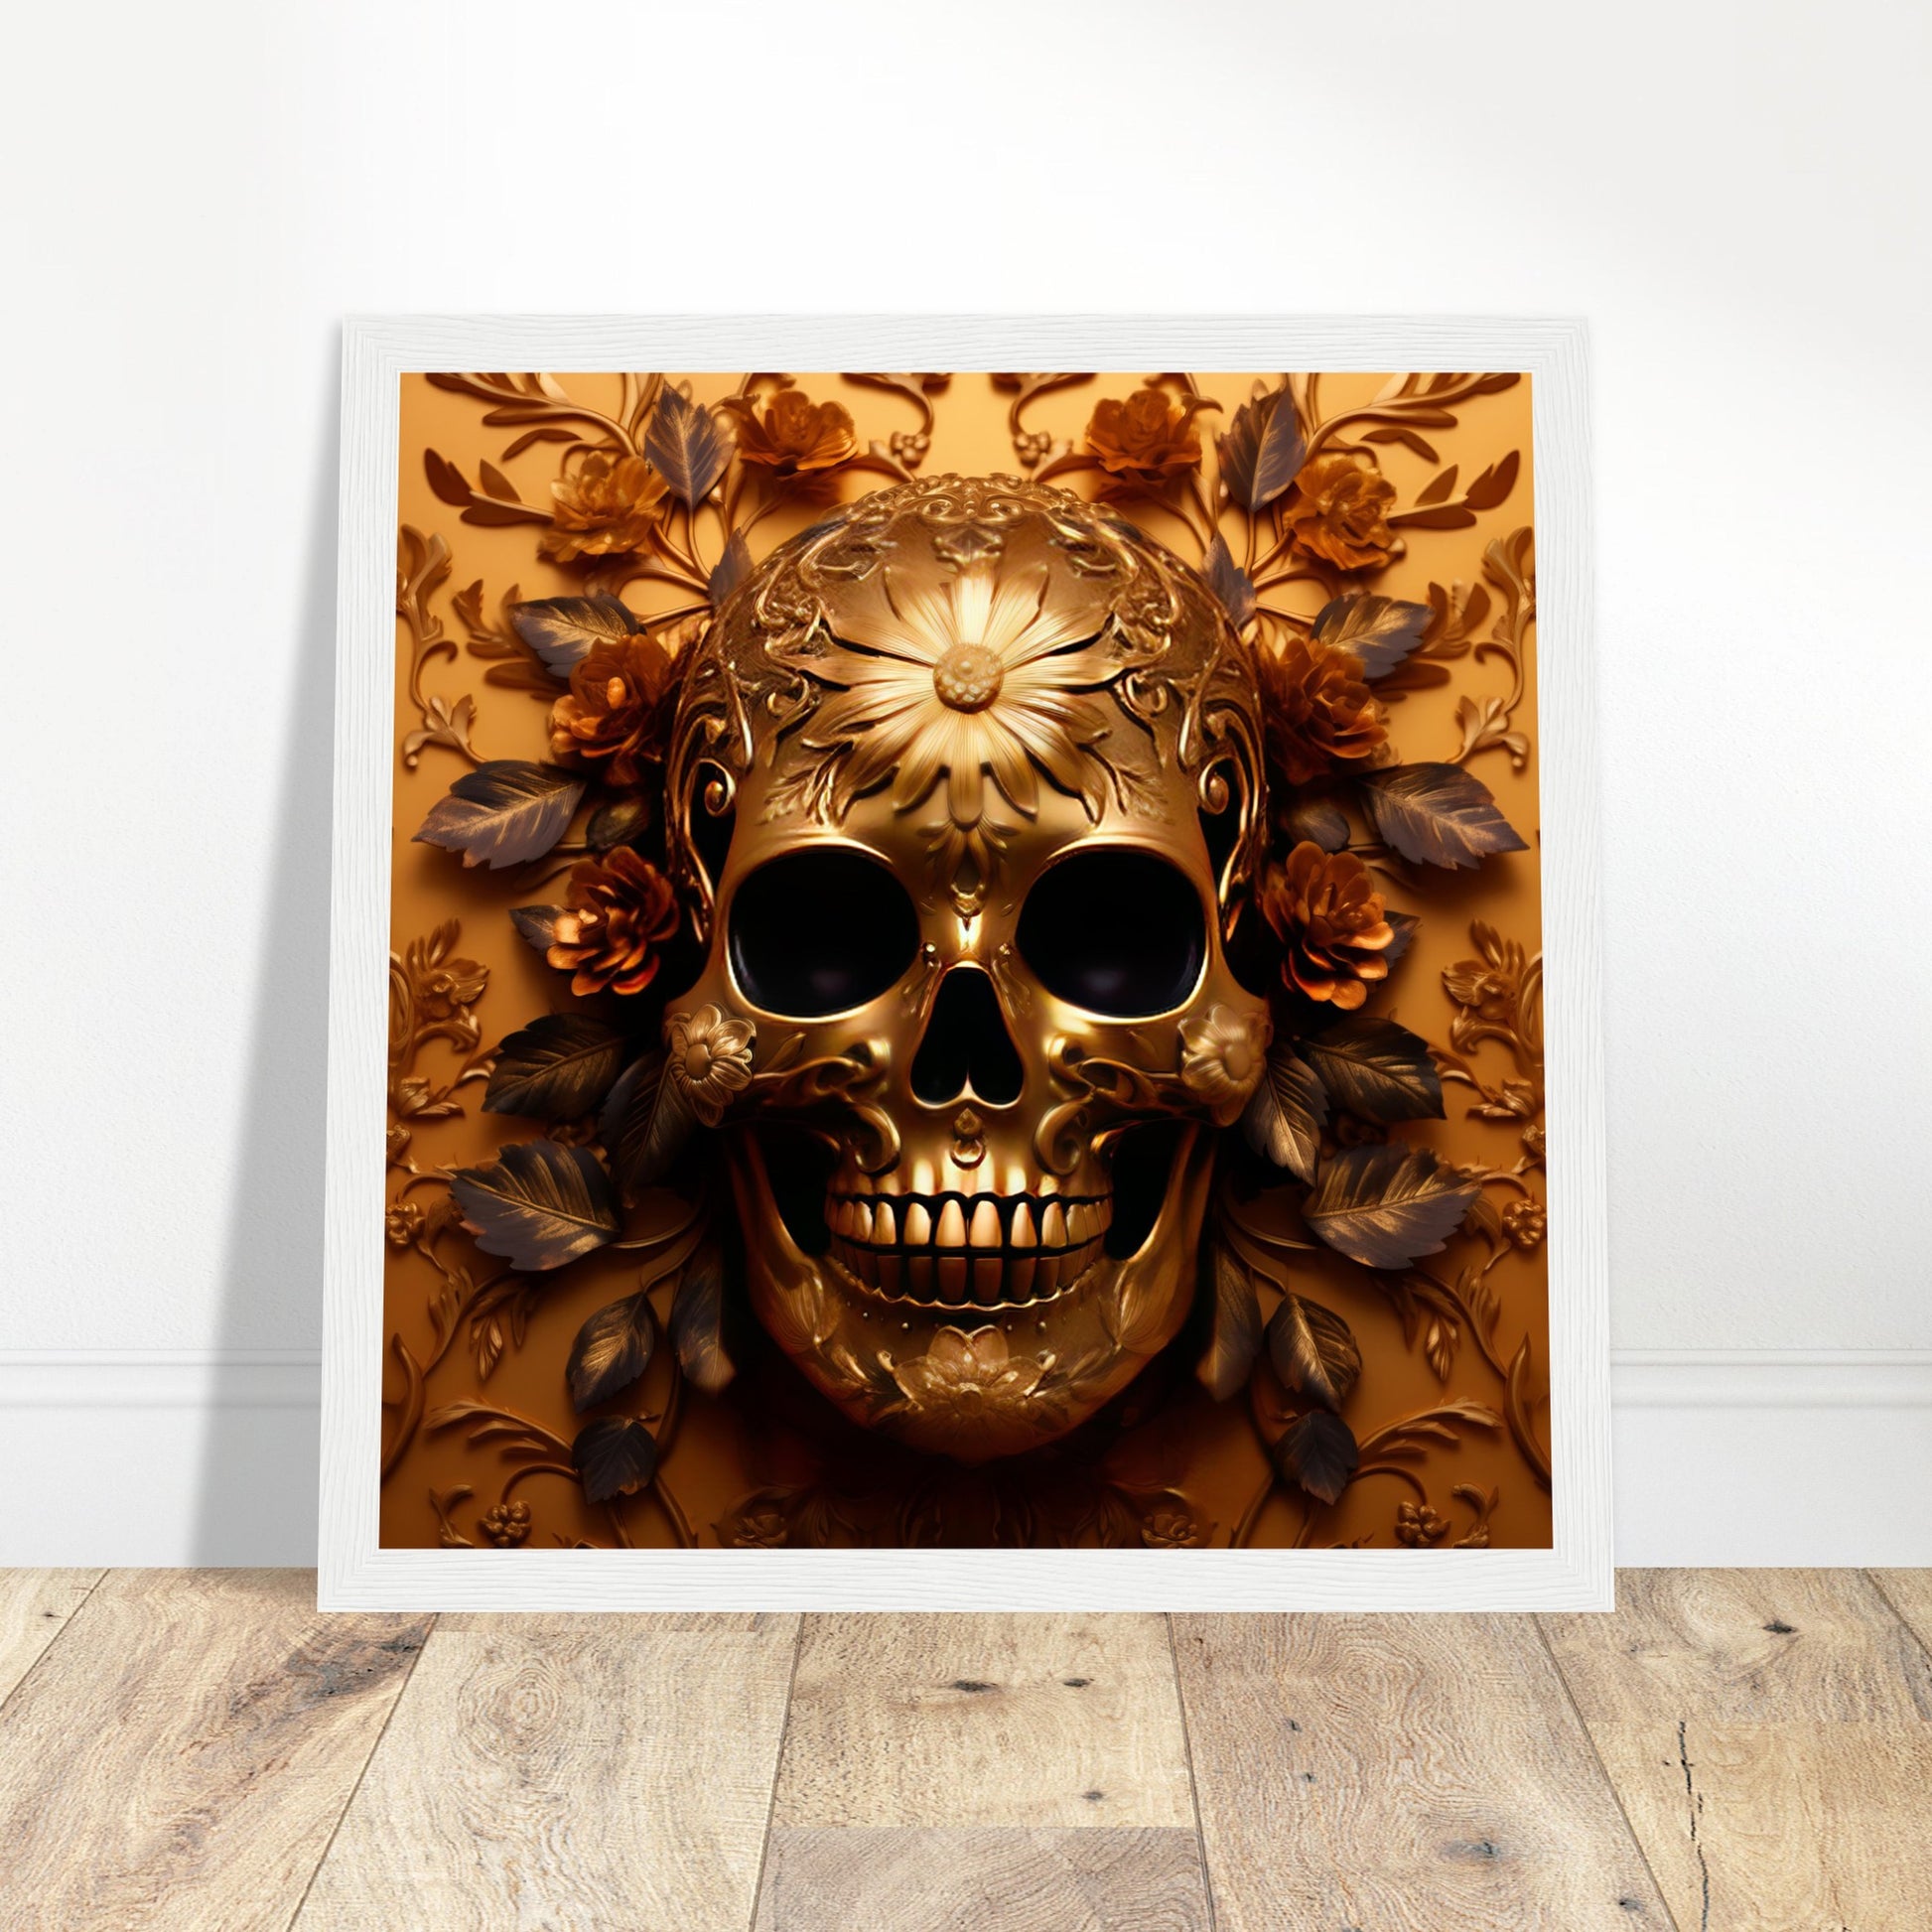 Golden Skull Artwork - Print Room Ltd Black frame 70x70 cm / 28x28"